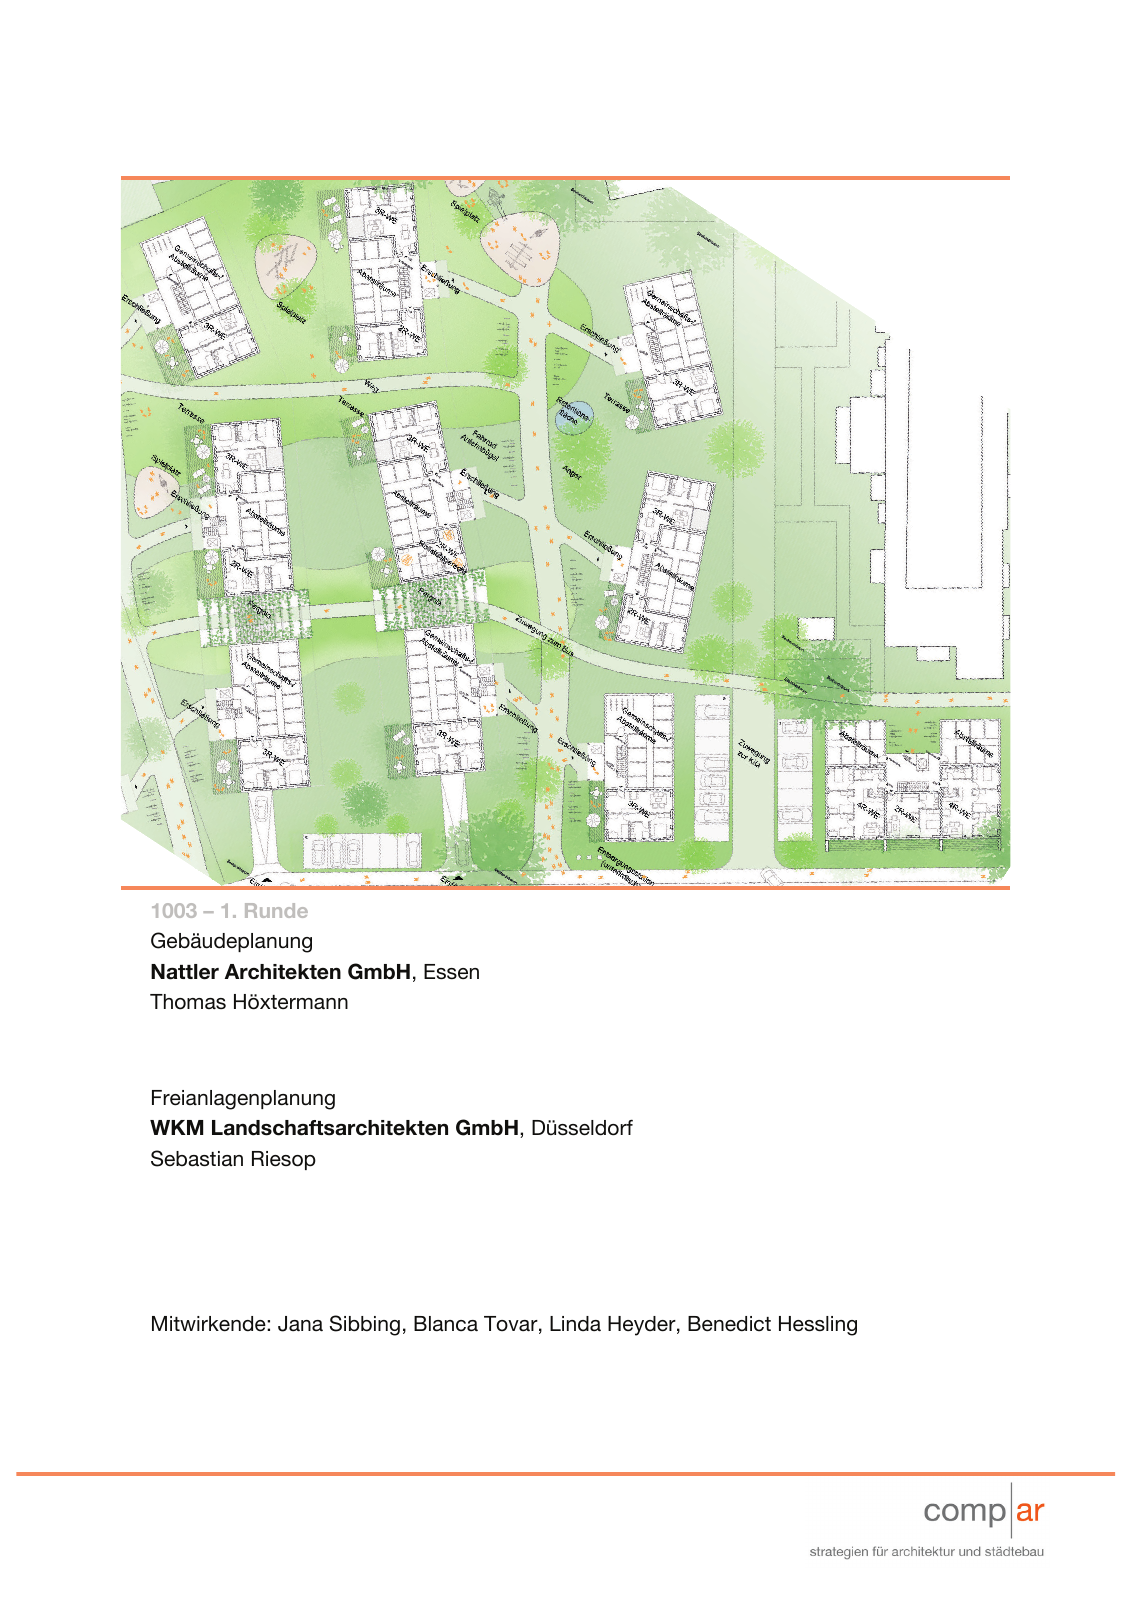 Vorschau Neubau von 100 Wohneinheiten [Nordhorn] Seite 27